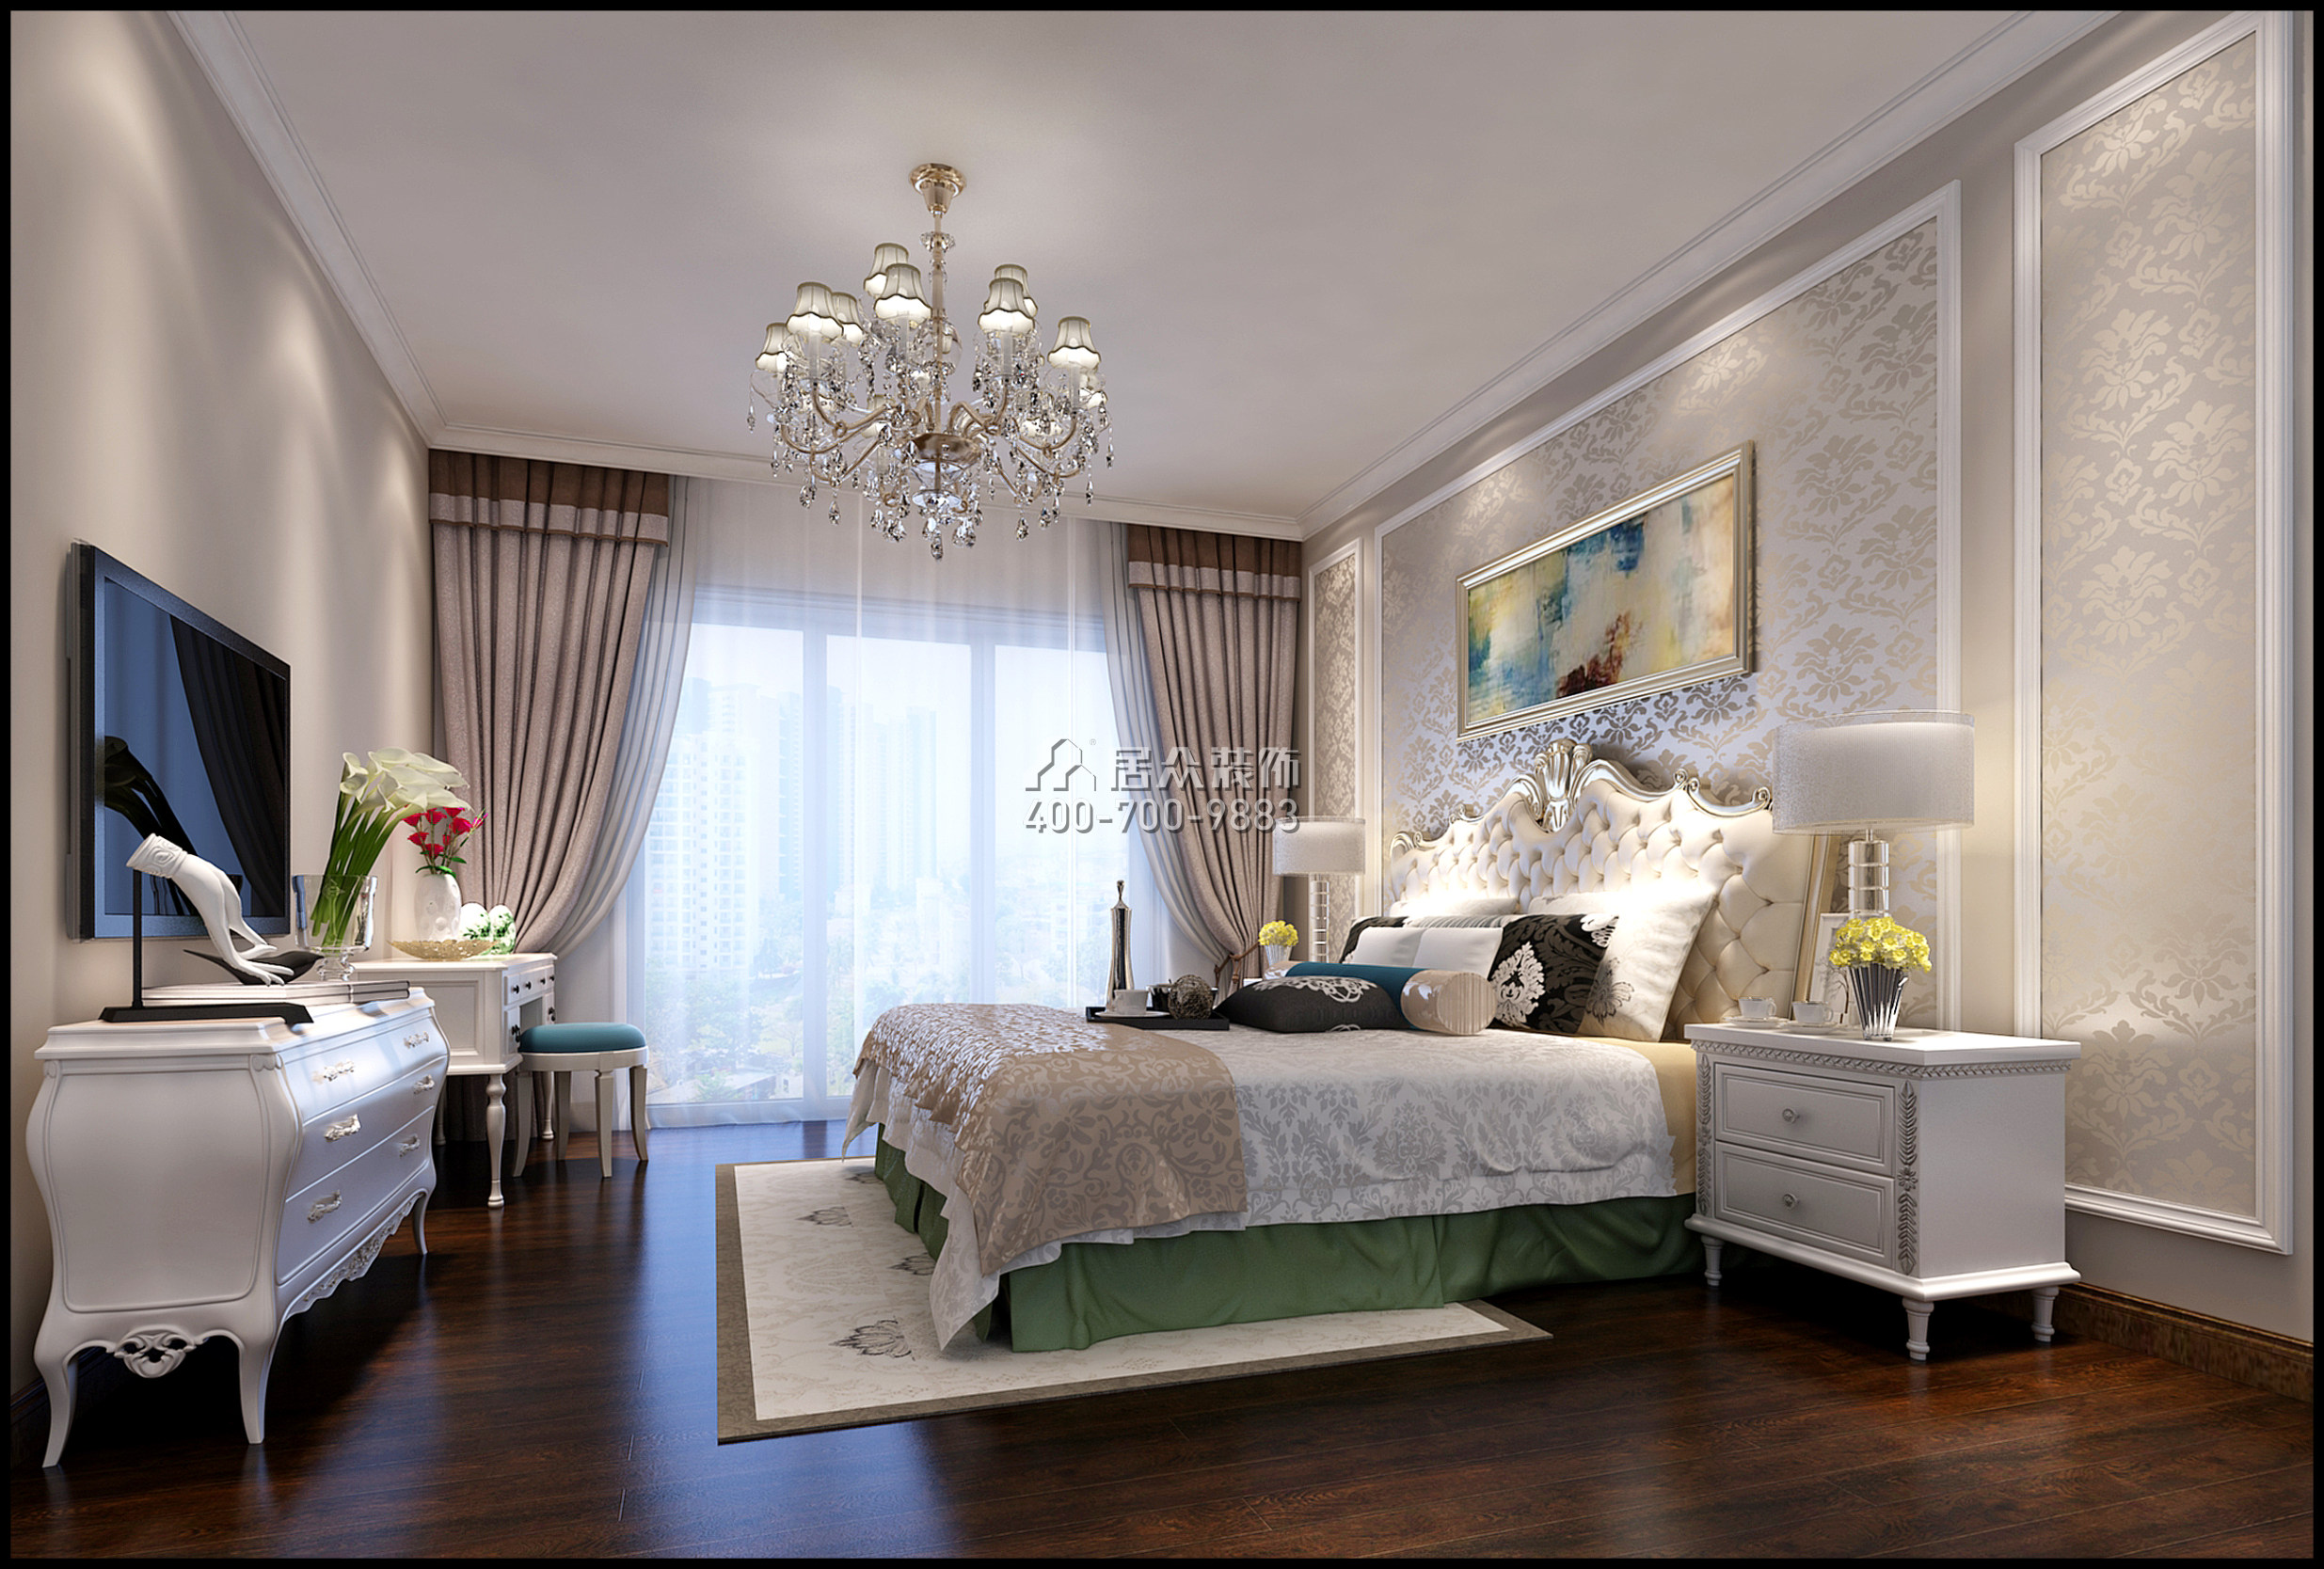 幸福城二期138平方米欧式风格复式户型卧室装修效果图